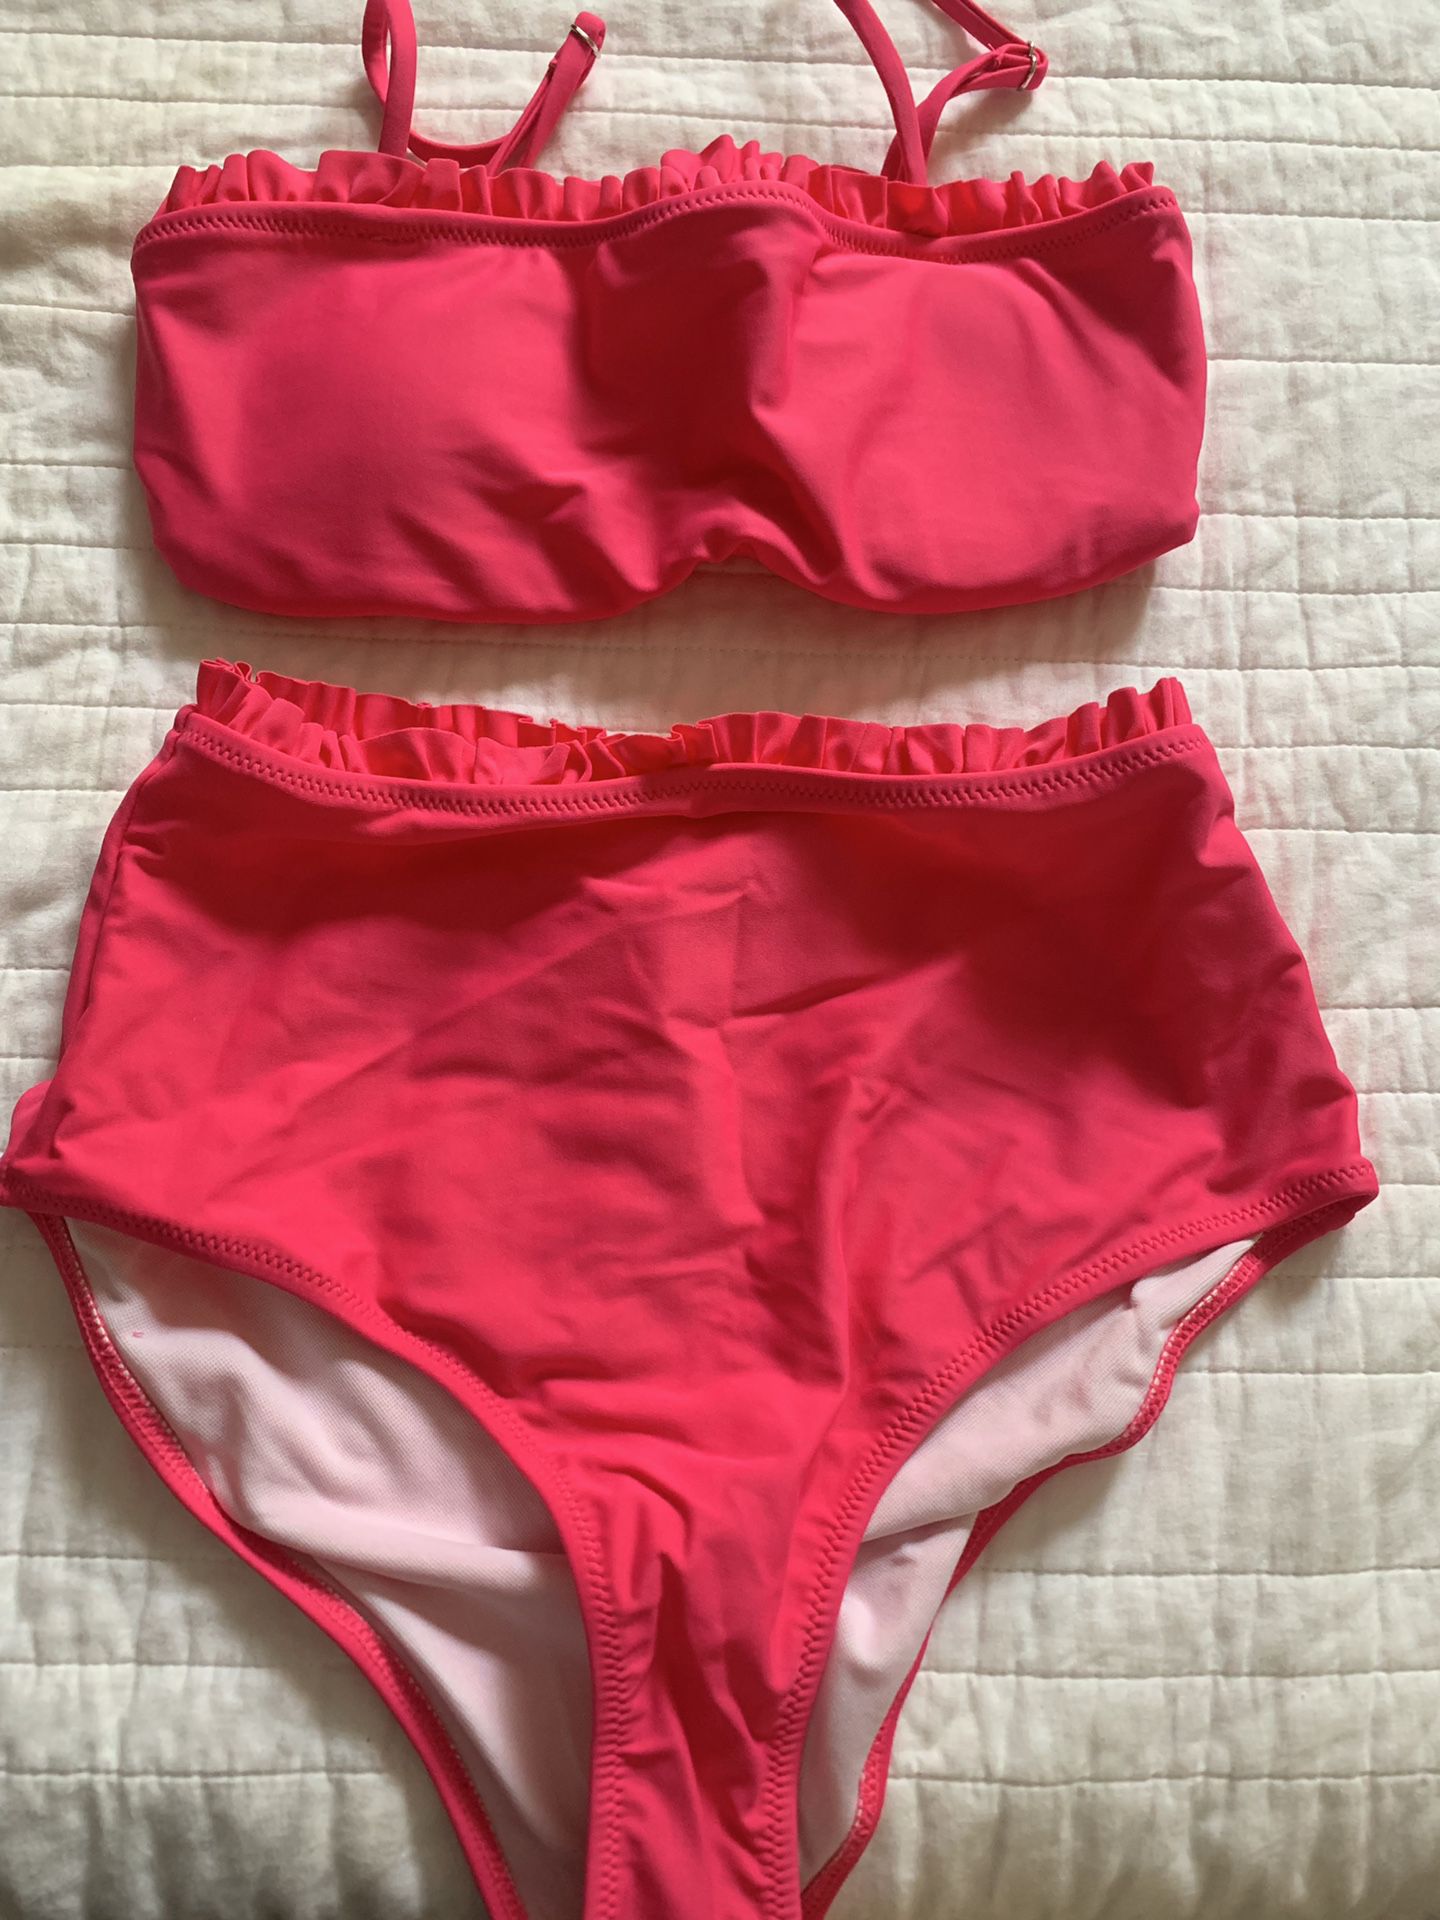 Hot pink swim suit size S